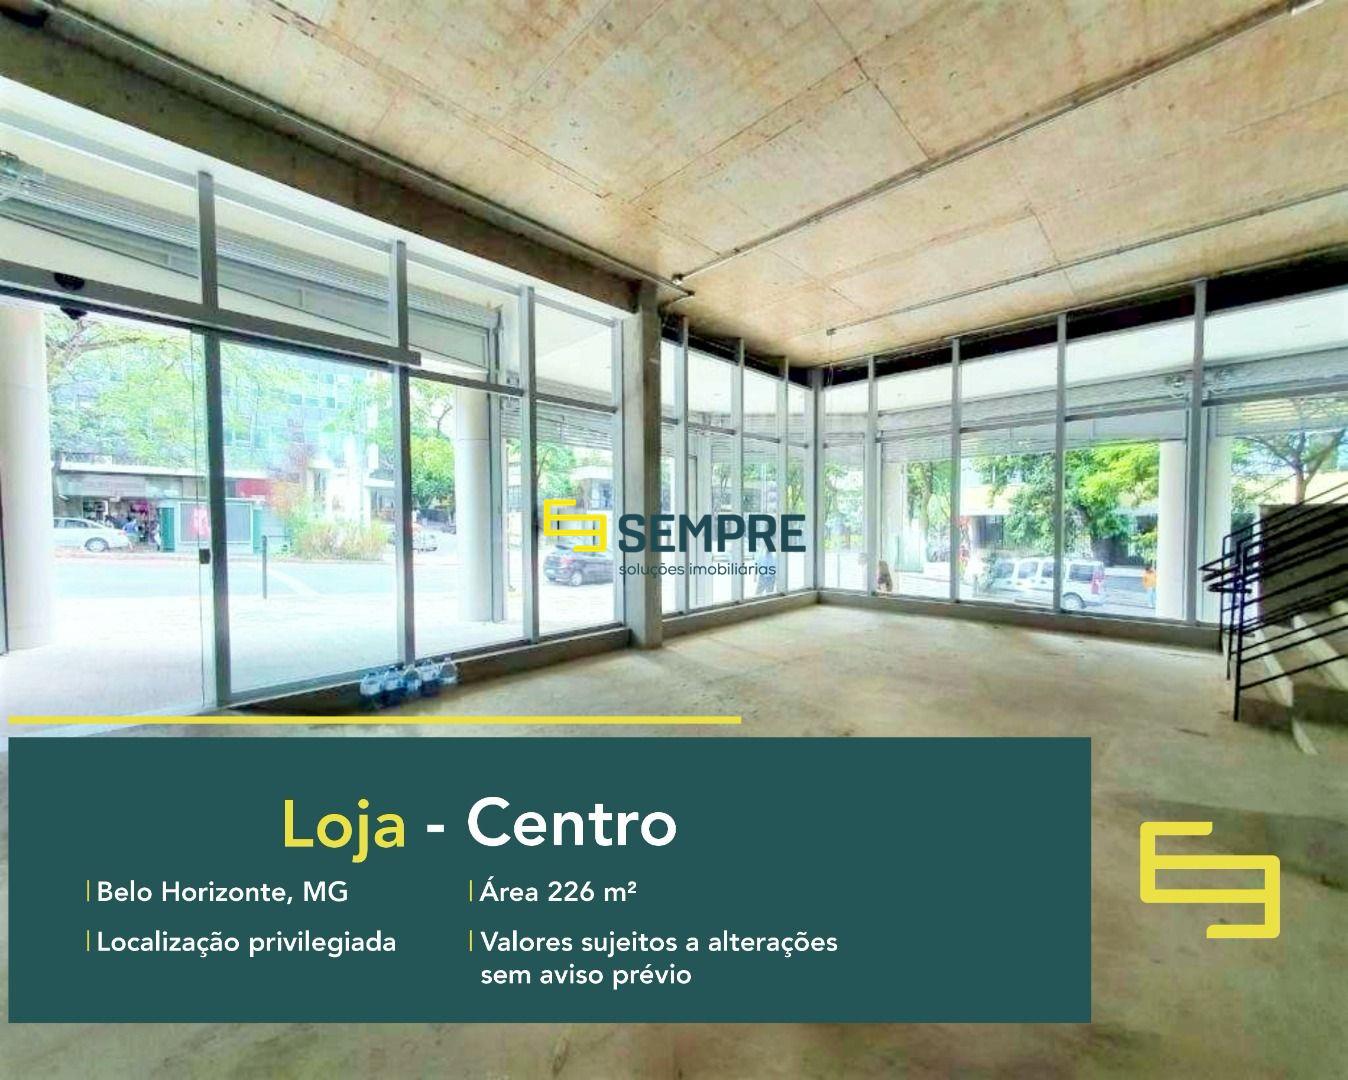 Loja para alugar no Centro de Belo Horizonte com excelente localização! O estabelecimento comercial conta, sobretudo, com área de 226 m².